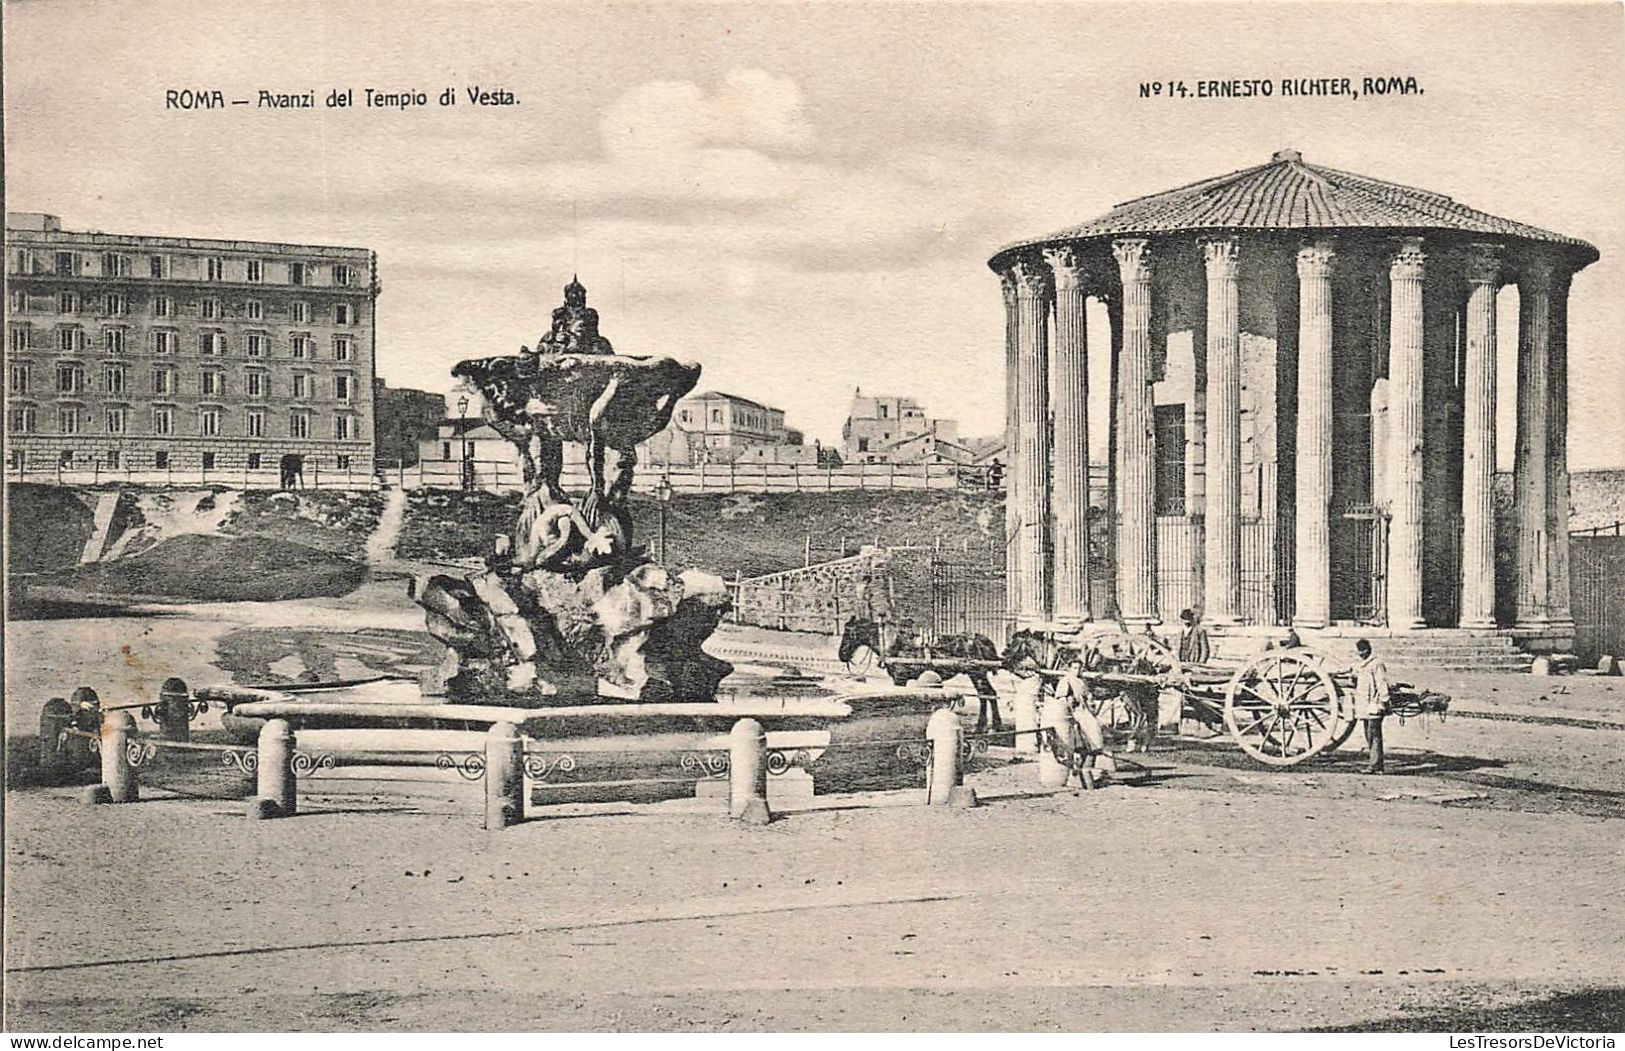 ITALIE - Roma - Avanzi Del Tempio Di Vesta - Ernesto Richter - Roma - Vue Générale - Carte Postale Ancienne - Andere Monumente & Gebäude